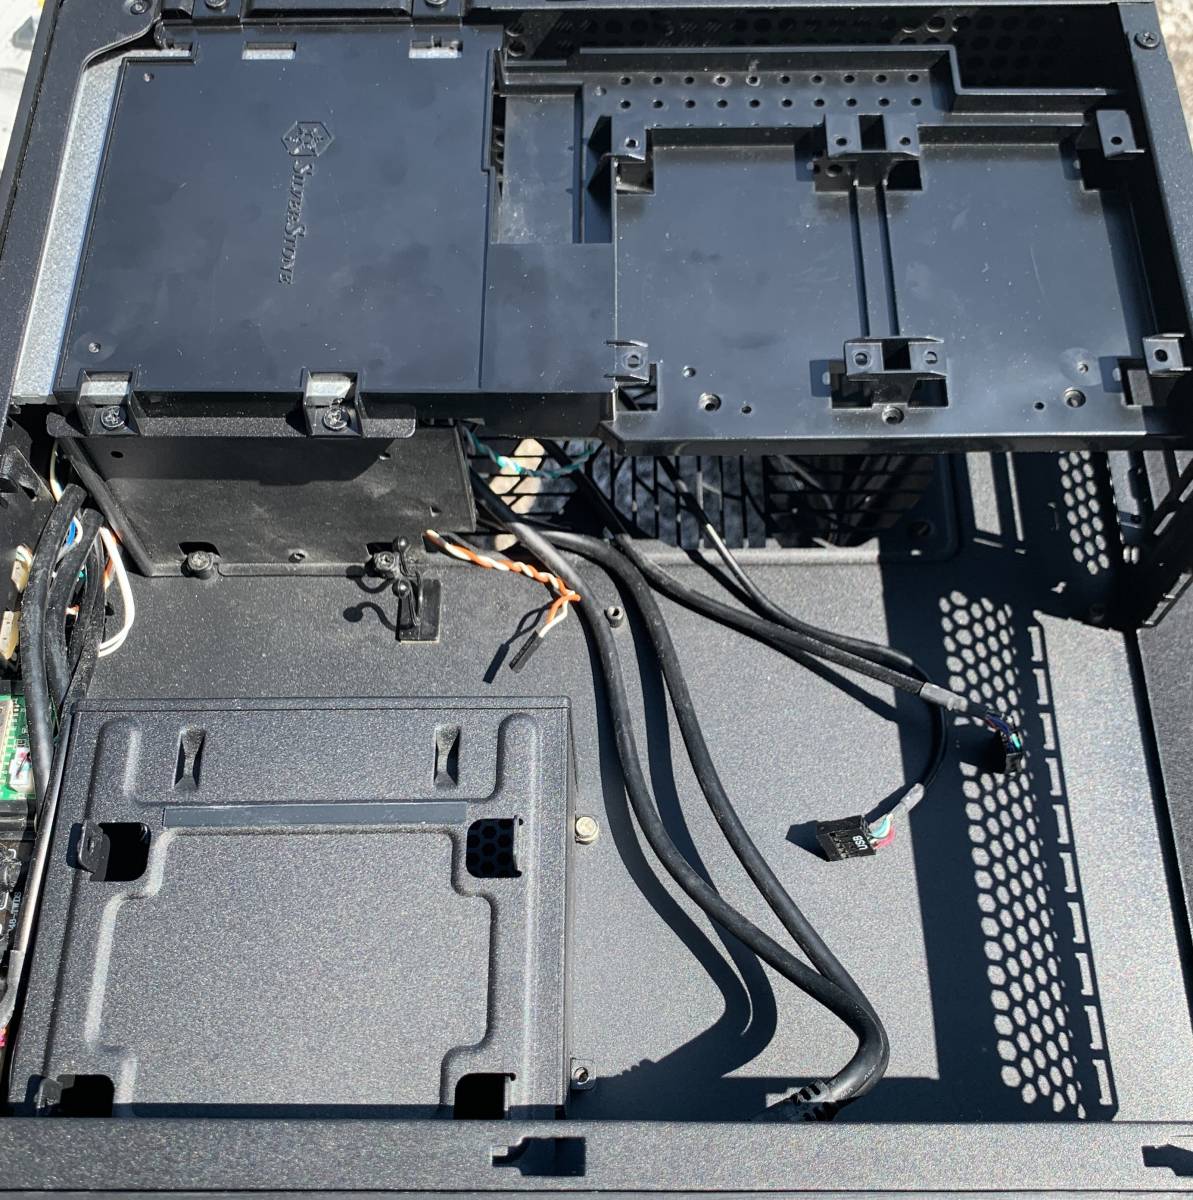 【破損・不良有】中古 GALLERIA ST 2015年前後モデル用 PCケース / Mini-ITX対応 電源無し・不良DVDドライブ・内部ケーブル等